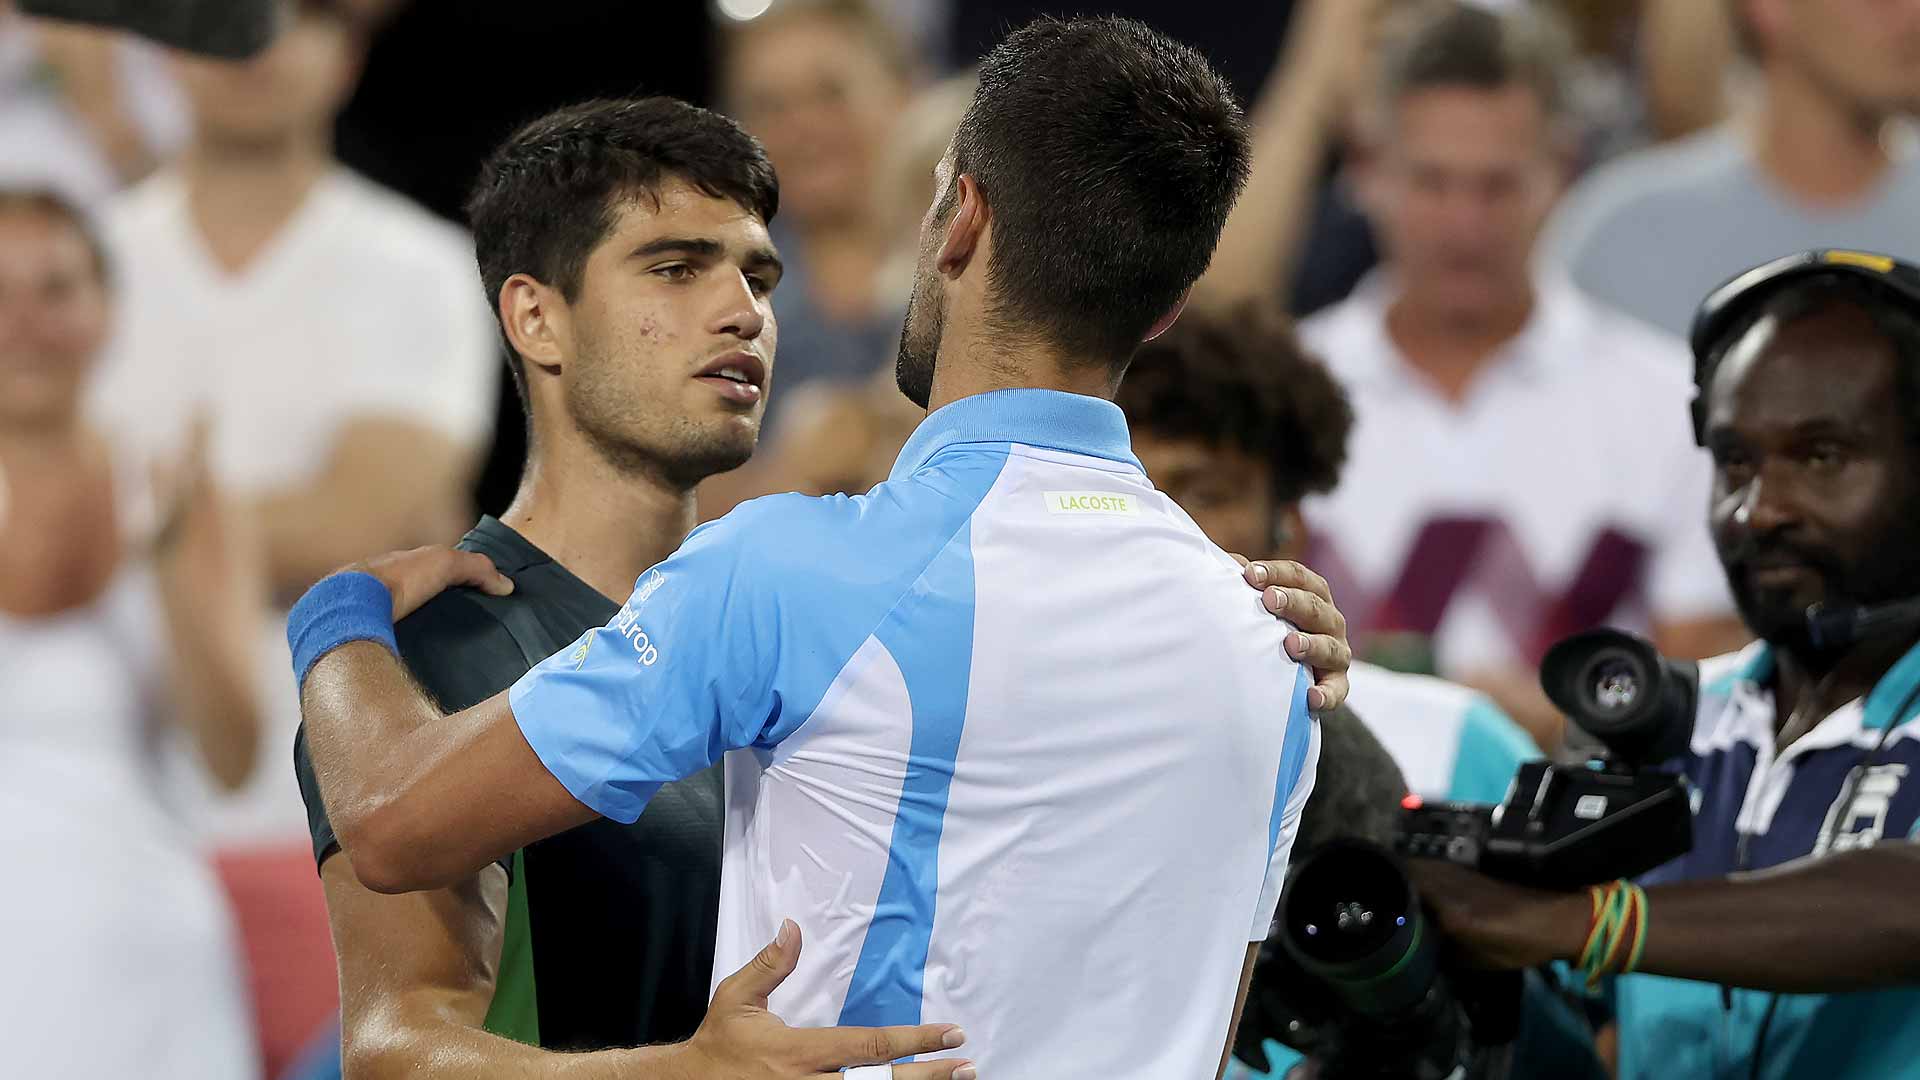 Carlos Alcaraz y Novak Djokovic